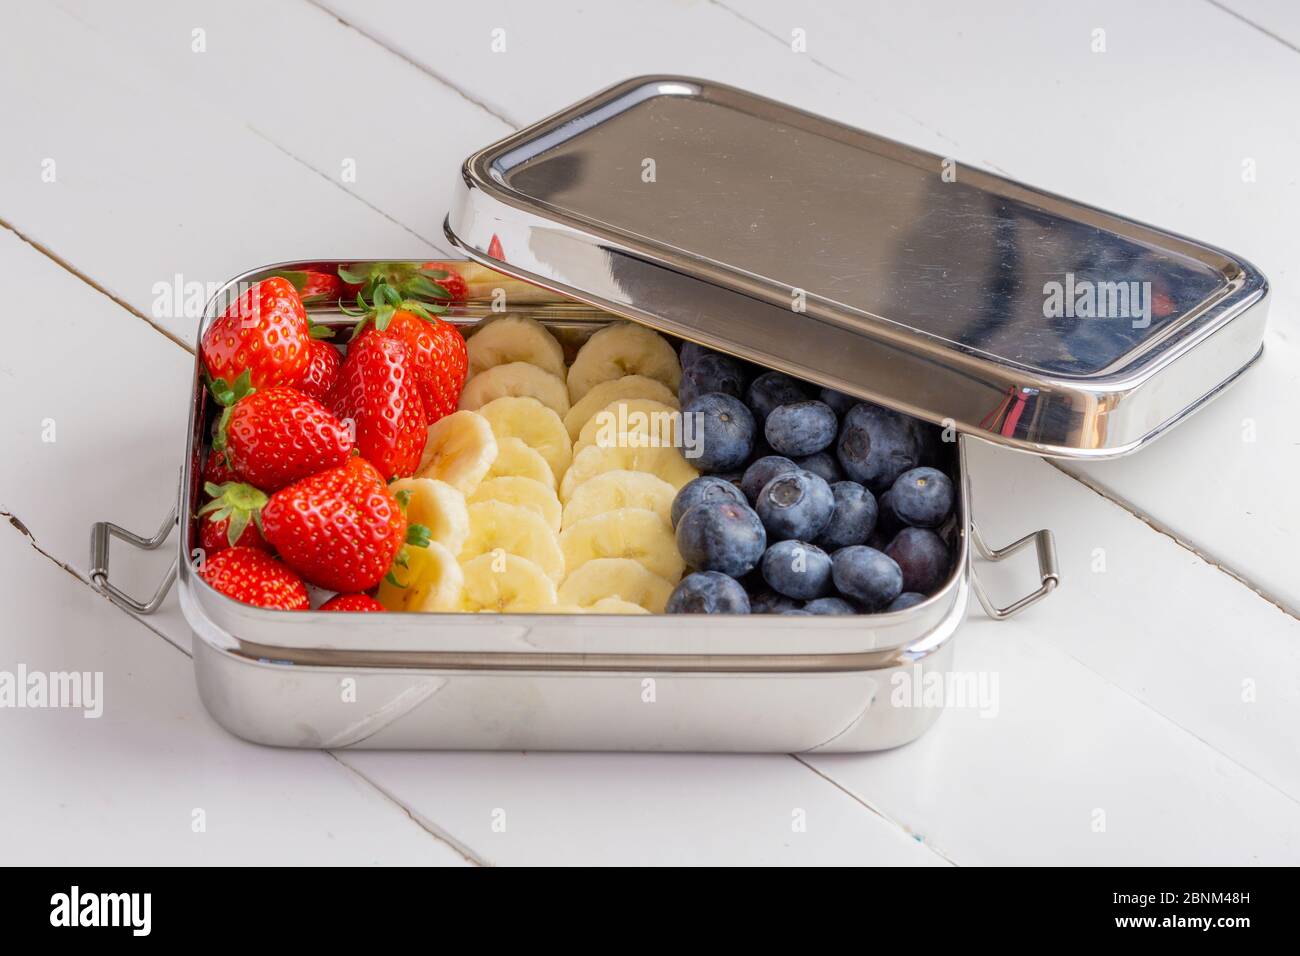 En-cas bleuets, bananes et fraises dans un grand récipient en acier inoxydable. Boîte à lunch sans plastique isolée sur fond blanc. Zéro déchet, écologique. Banque D'Images